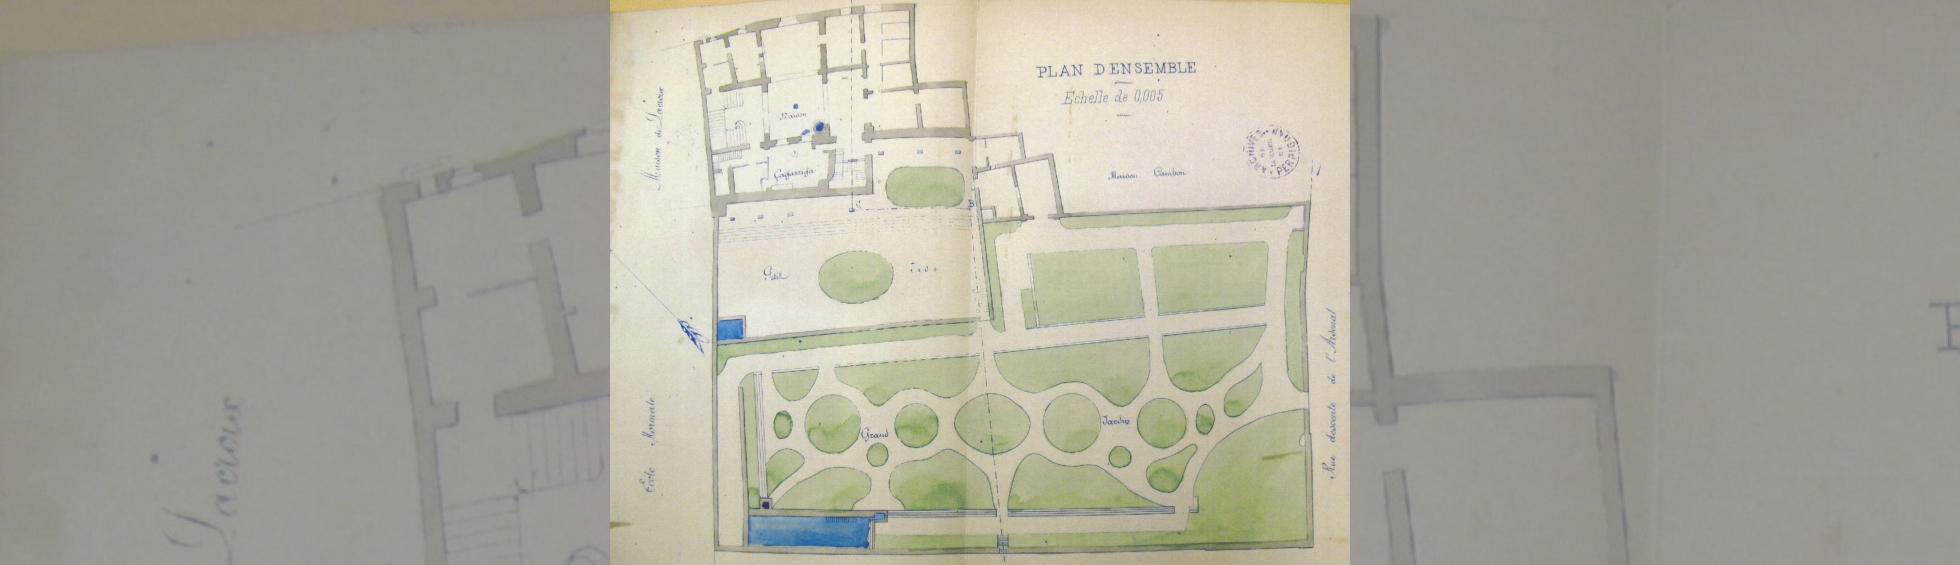 Plan de l'hotel et des jardins 